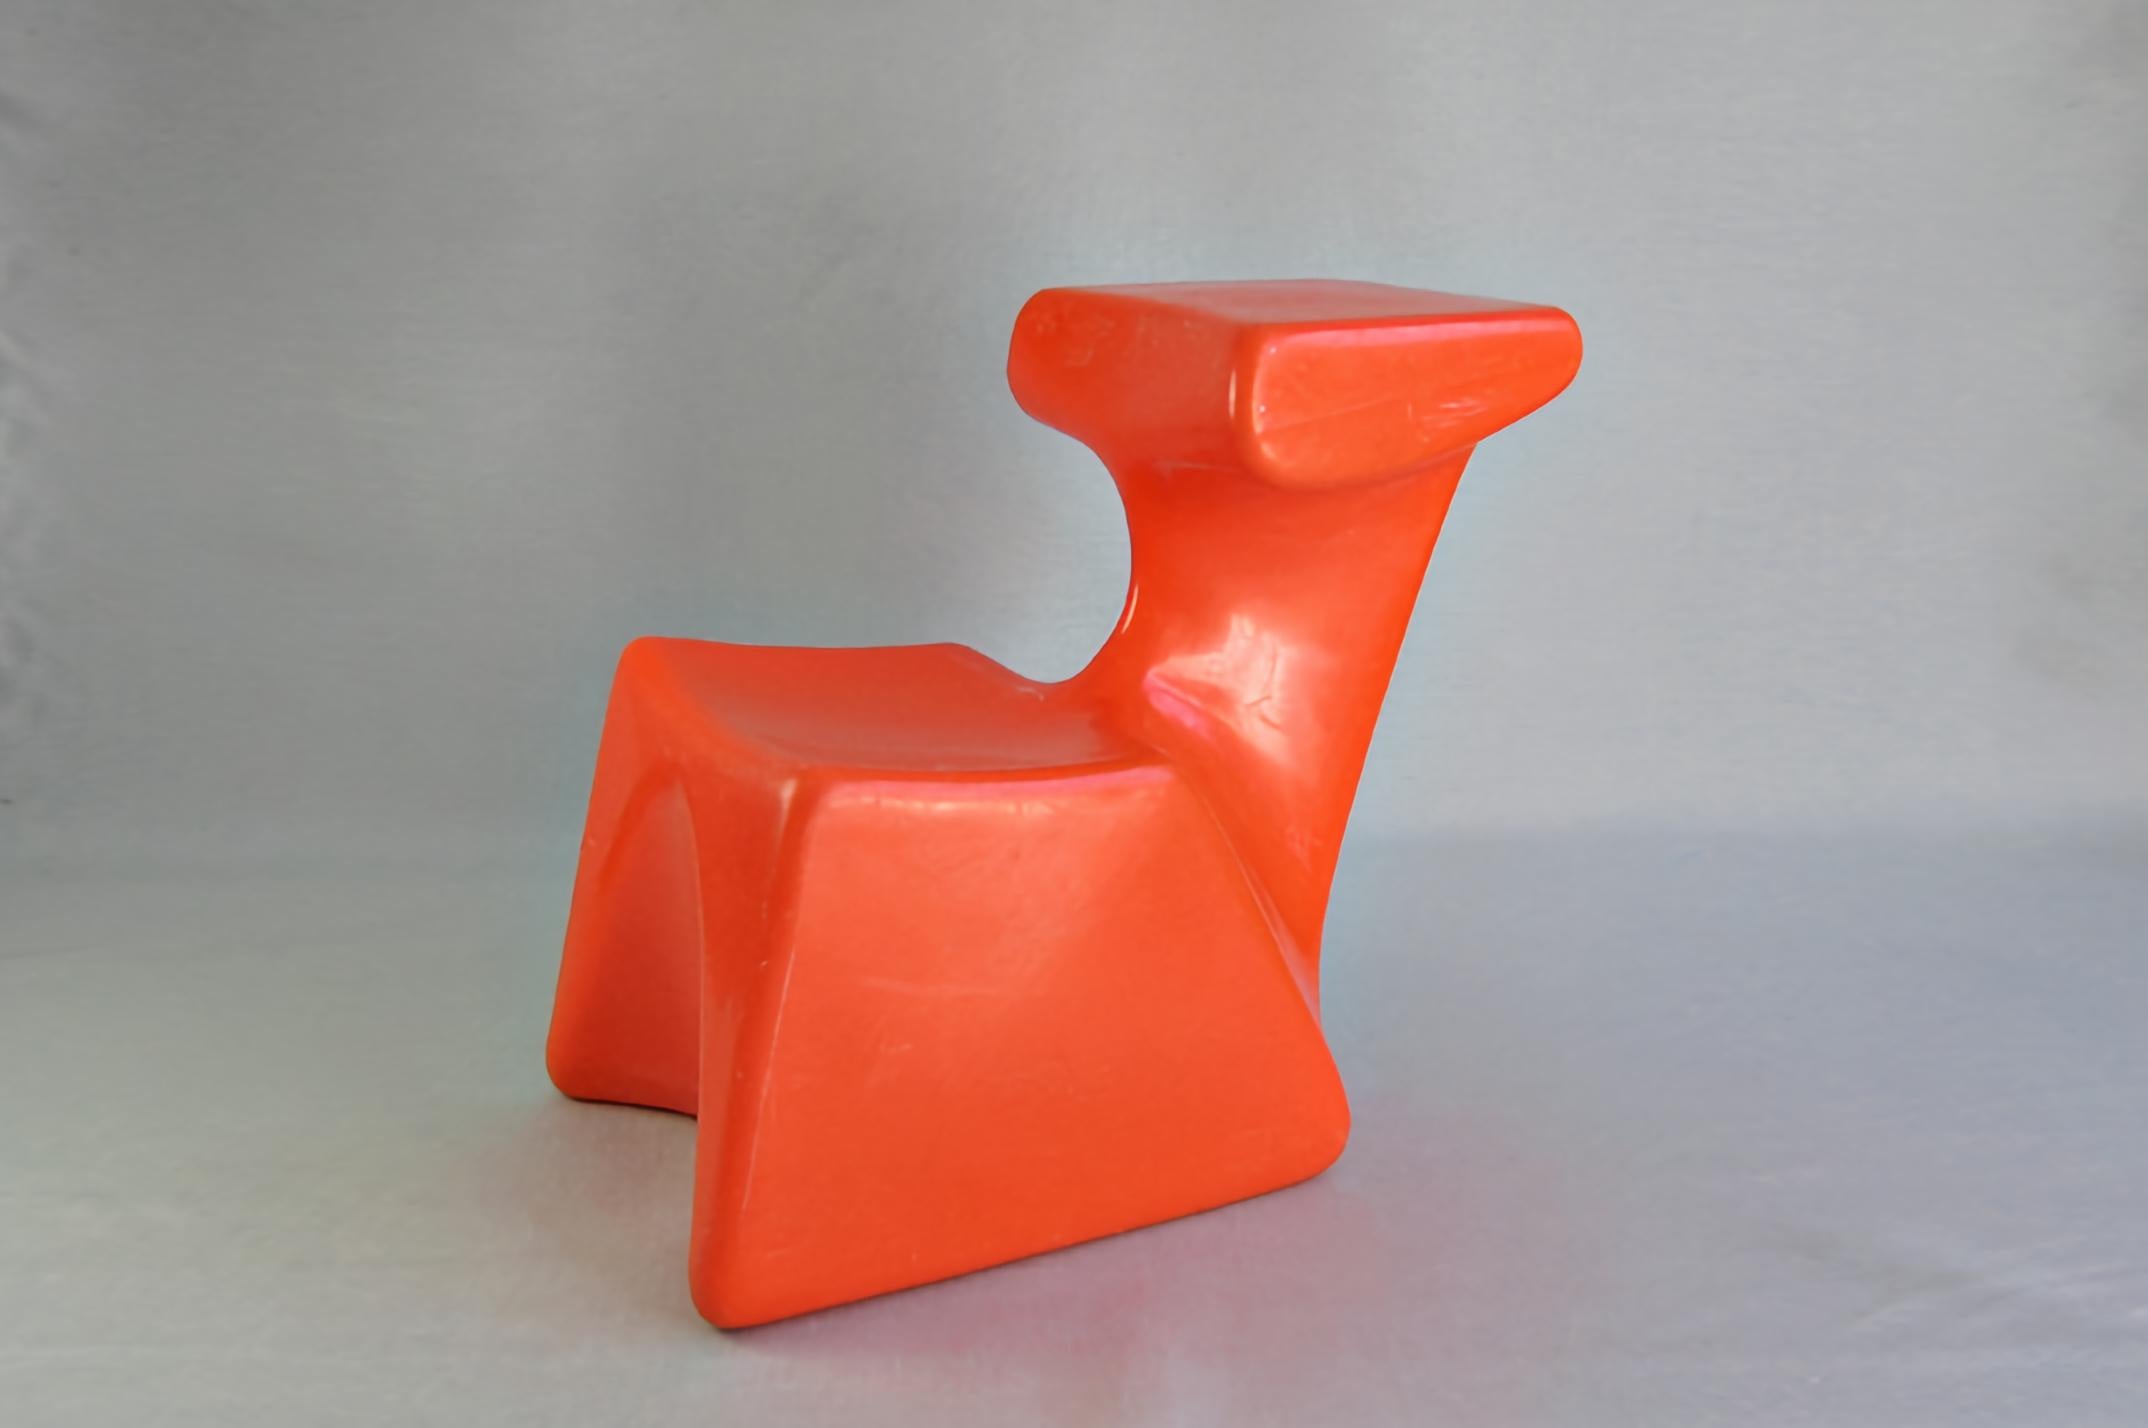 Zocker von Luigi Colani 1972
Spitzensystem Burkhard Lübke

Luigi Colani hat diesen Stuhl eigentlich für Kinder entworfen. Zum ersten Mal in der Geschichte des Möbeldesigns wurde aus einem Kinderstuhl namens Zocker ein Stuhl für Erwachsene